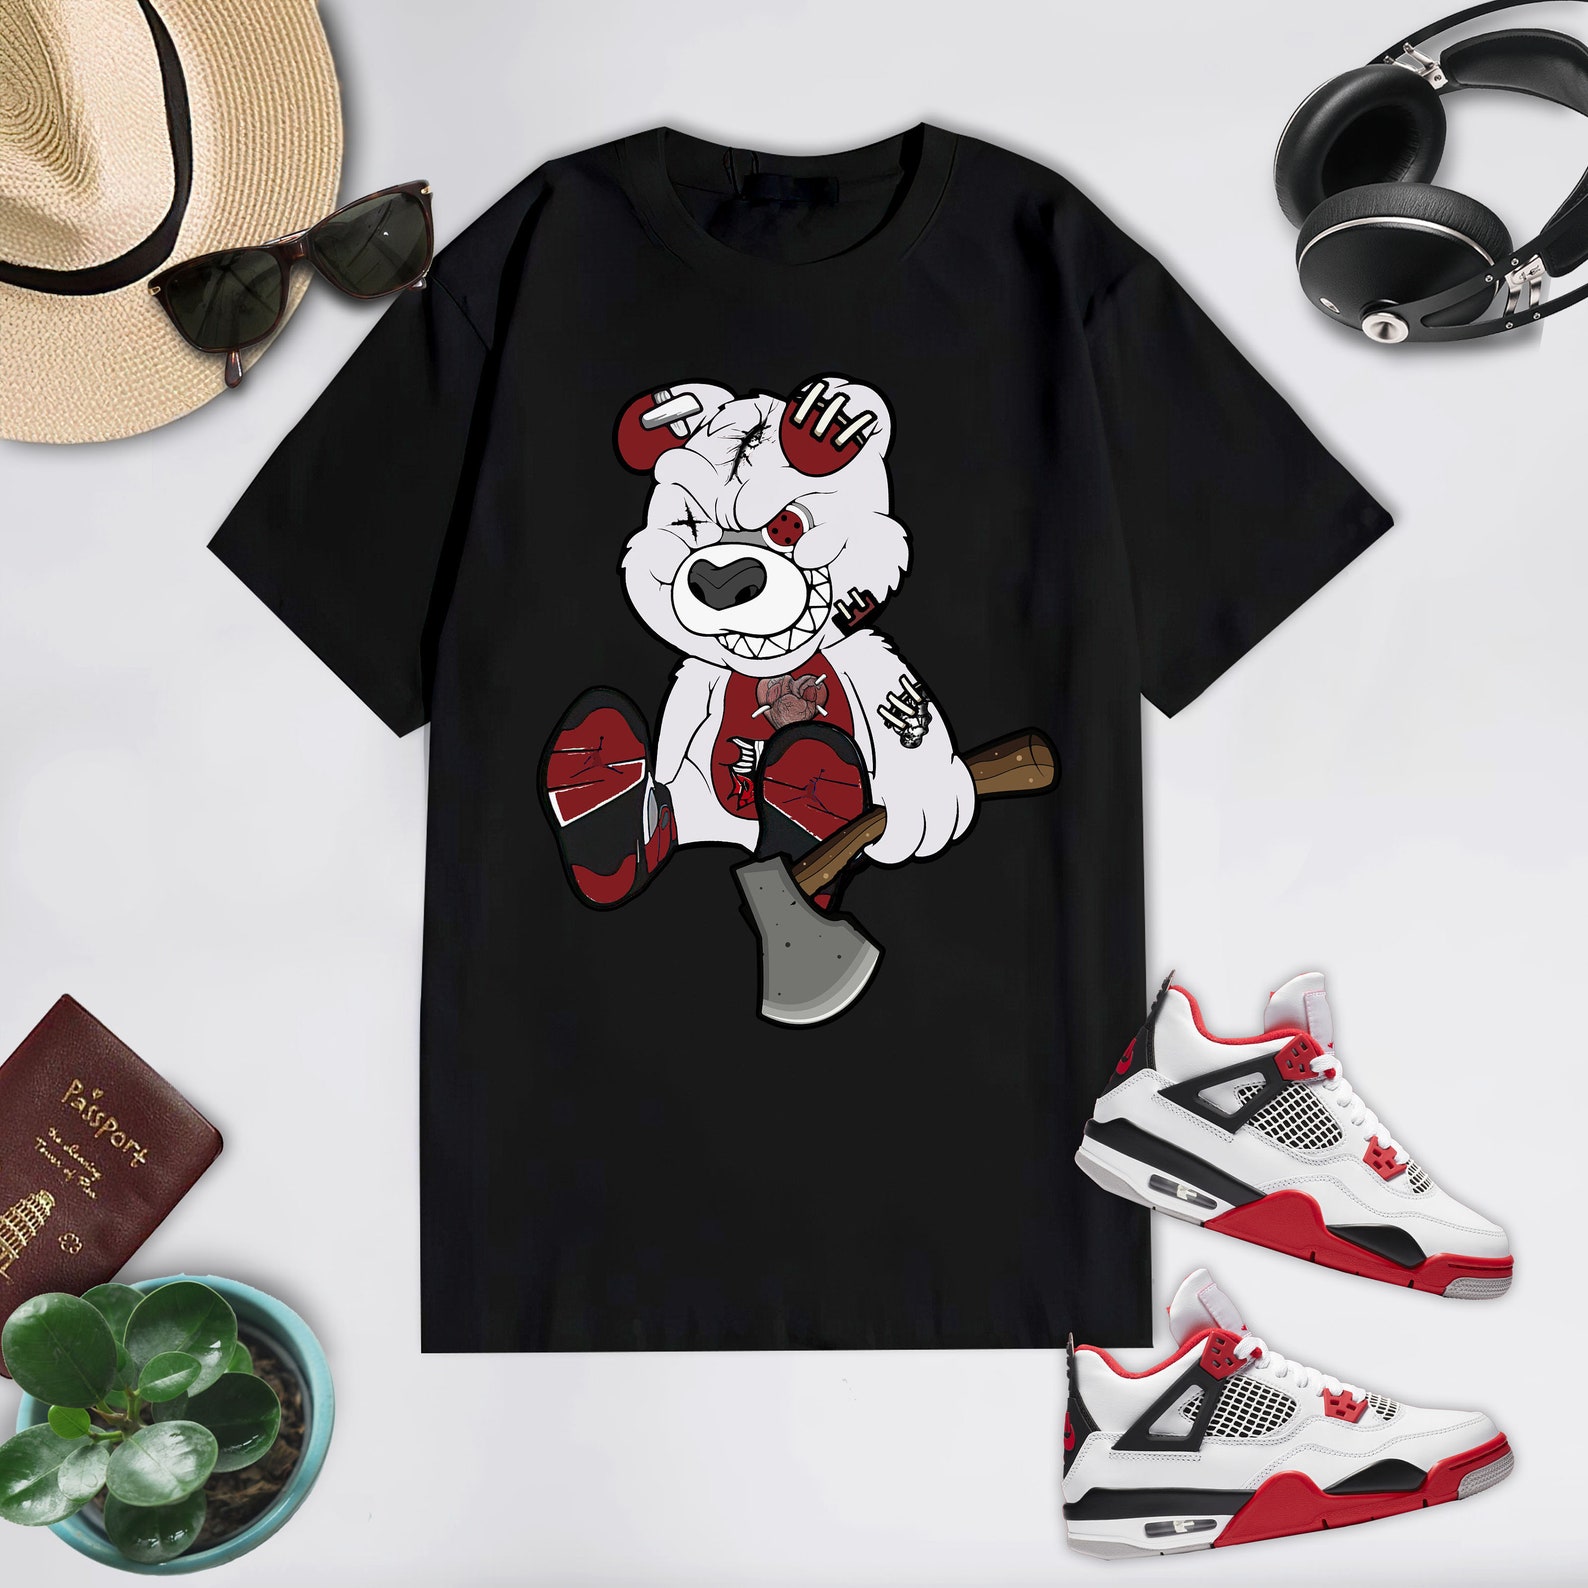 Nike Air Jordan 4 Fire Red Sneakers Tee Teddy bear Nike Air | Etsy